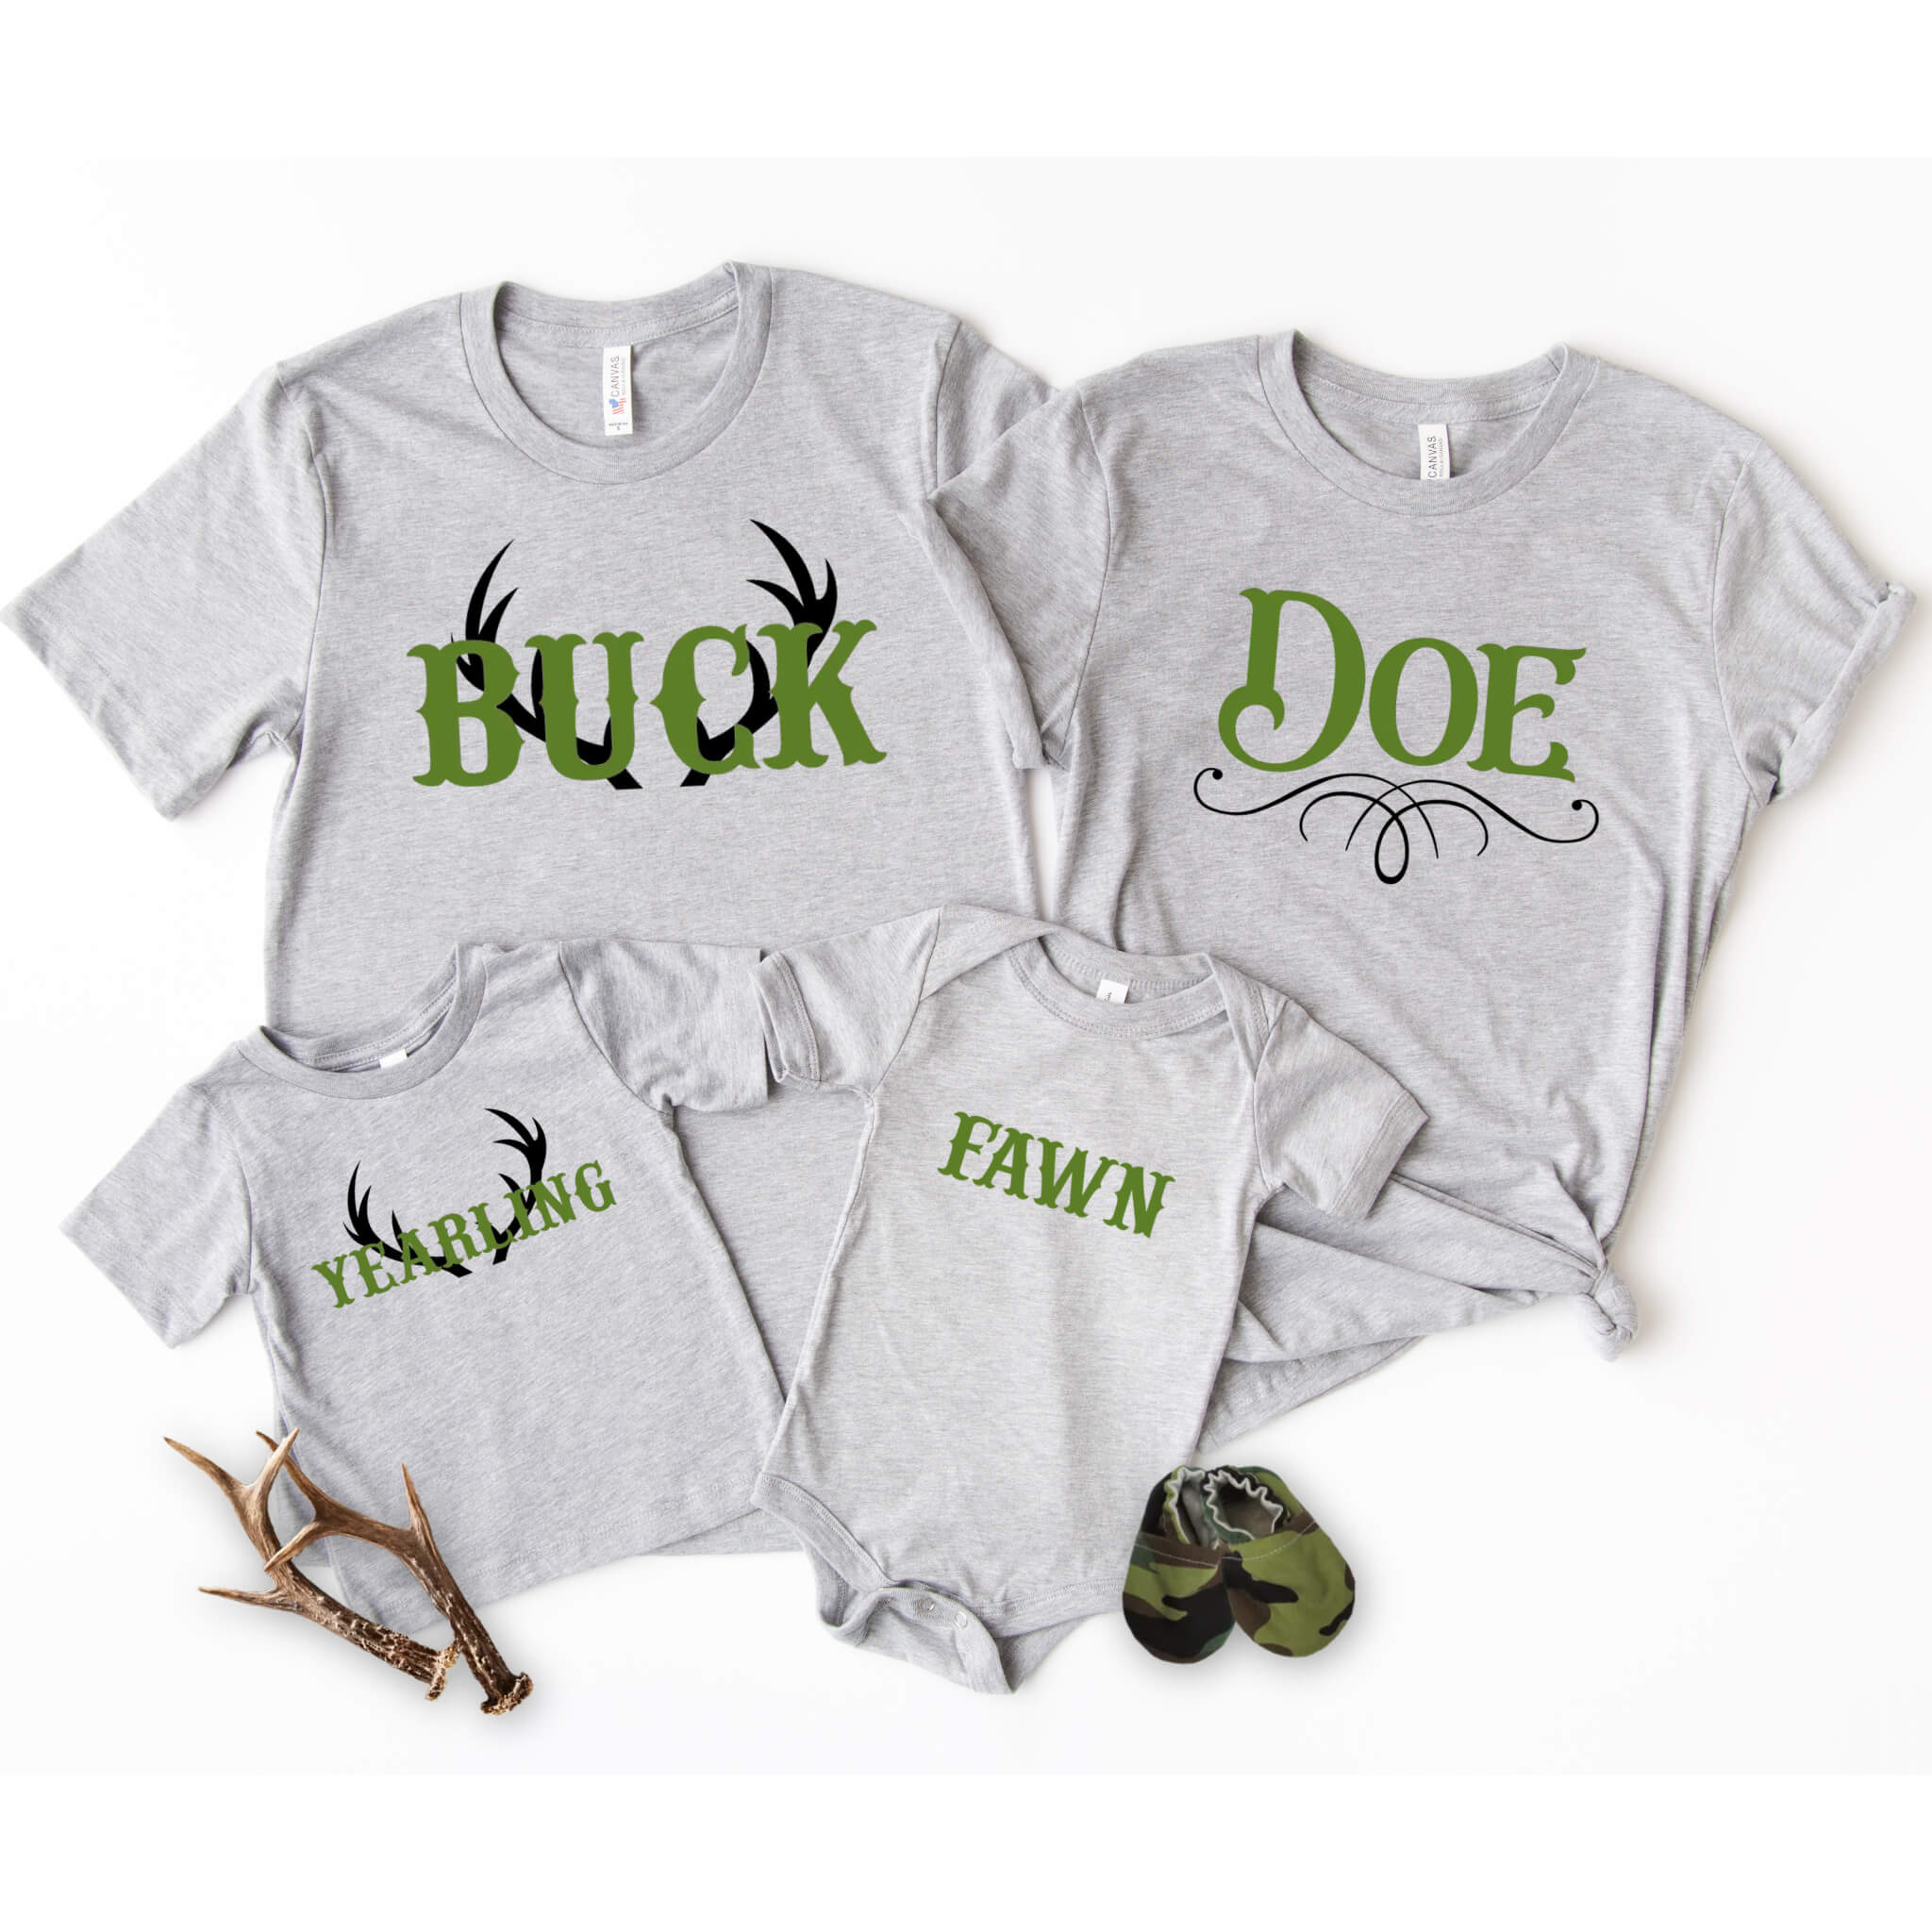 Camisas personalizadas de grupo familiar de campo a juego con ciervos Buck Doe